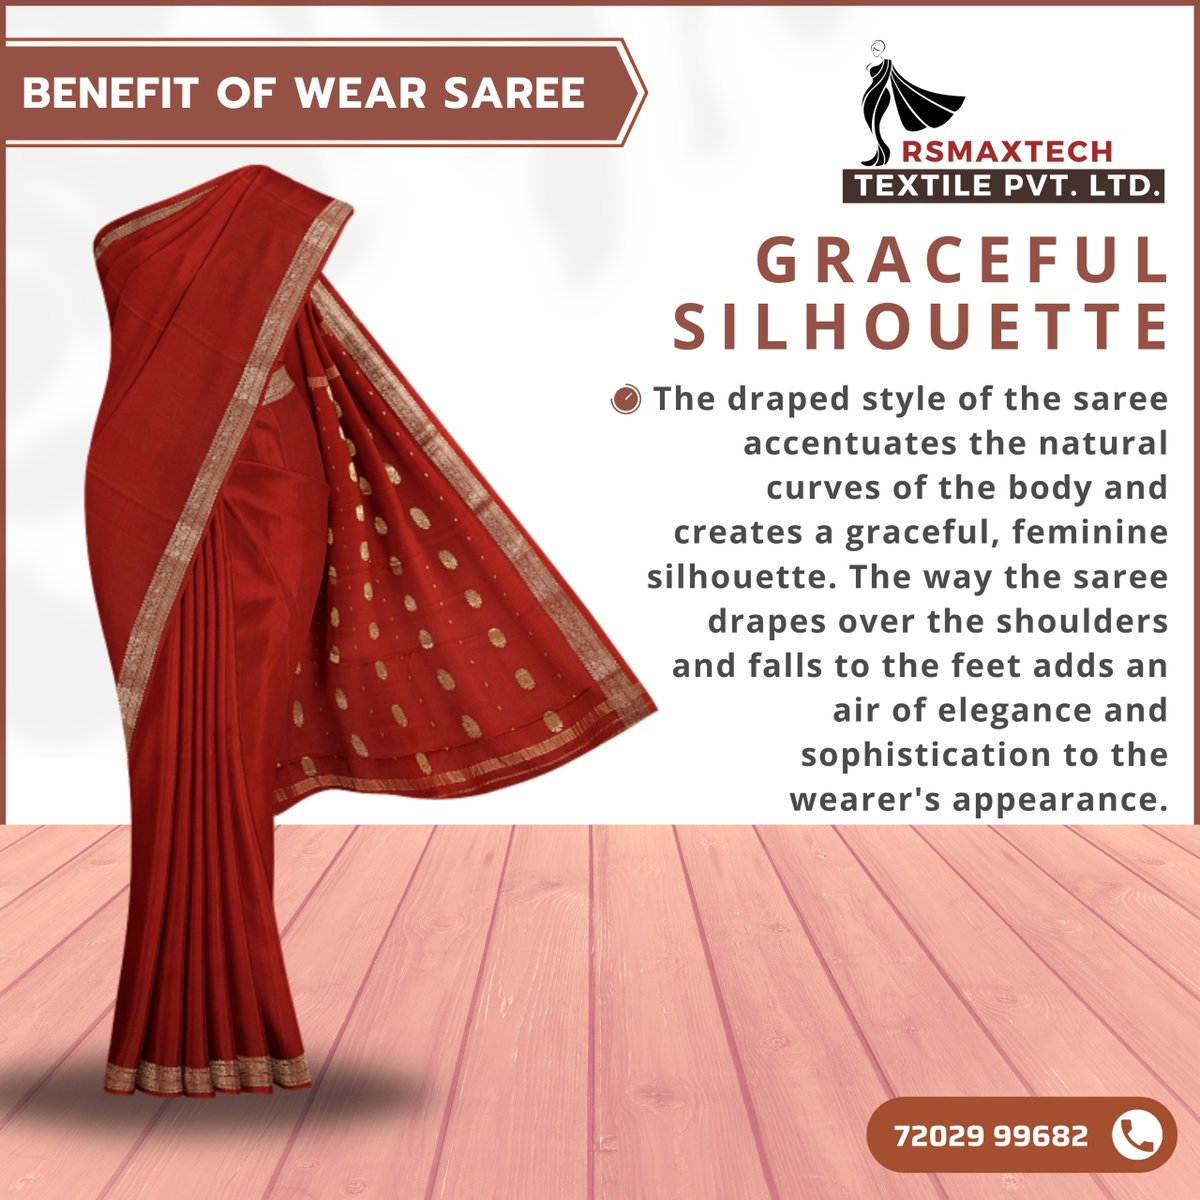 Benefits of Saree.
.
.
#sarees #saree #sareelove #fashion #sareelovers #onlineshopping #sareesofinstagram #ethnicwear #sareeblouse #silksarees #sareefashion #silksaree #indianwear #sareeindia #handloom #silk #indianfashion #sareedraping #traditional #designersarees #india #kurti